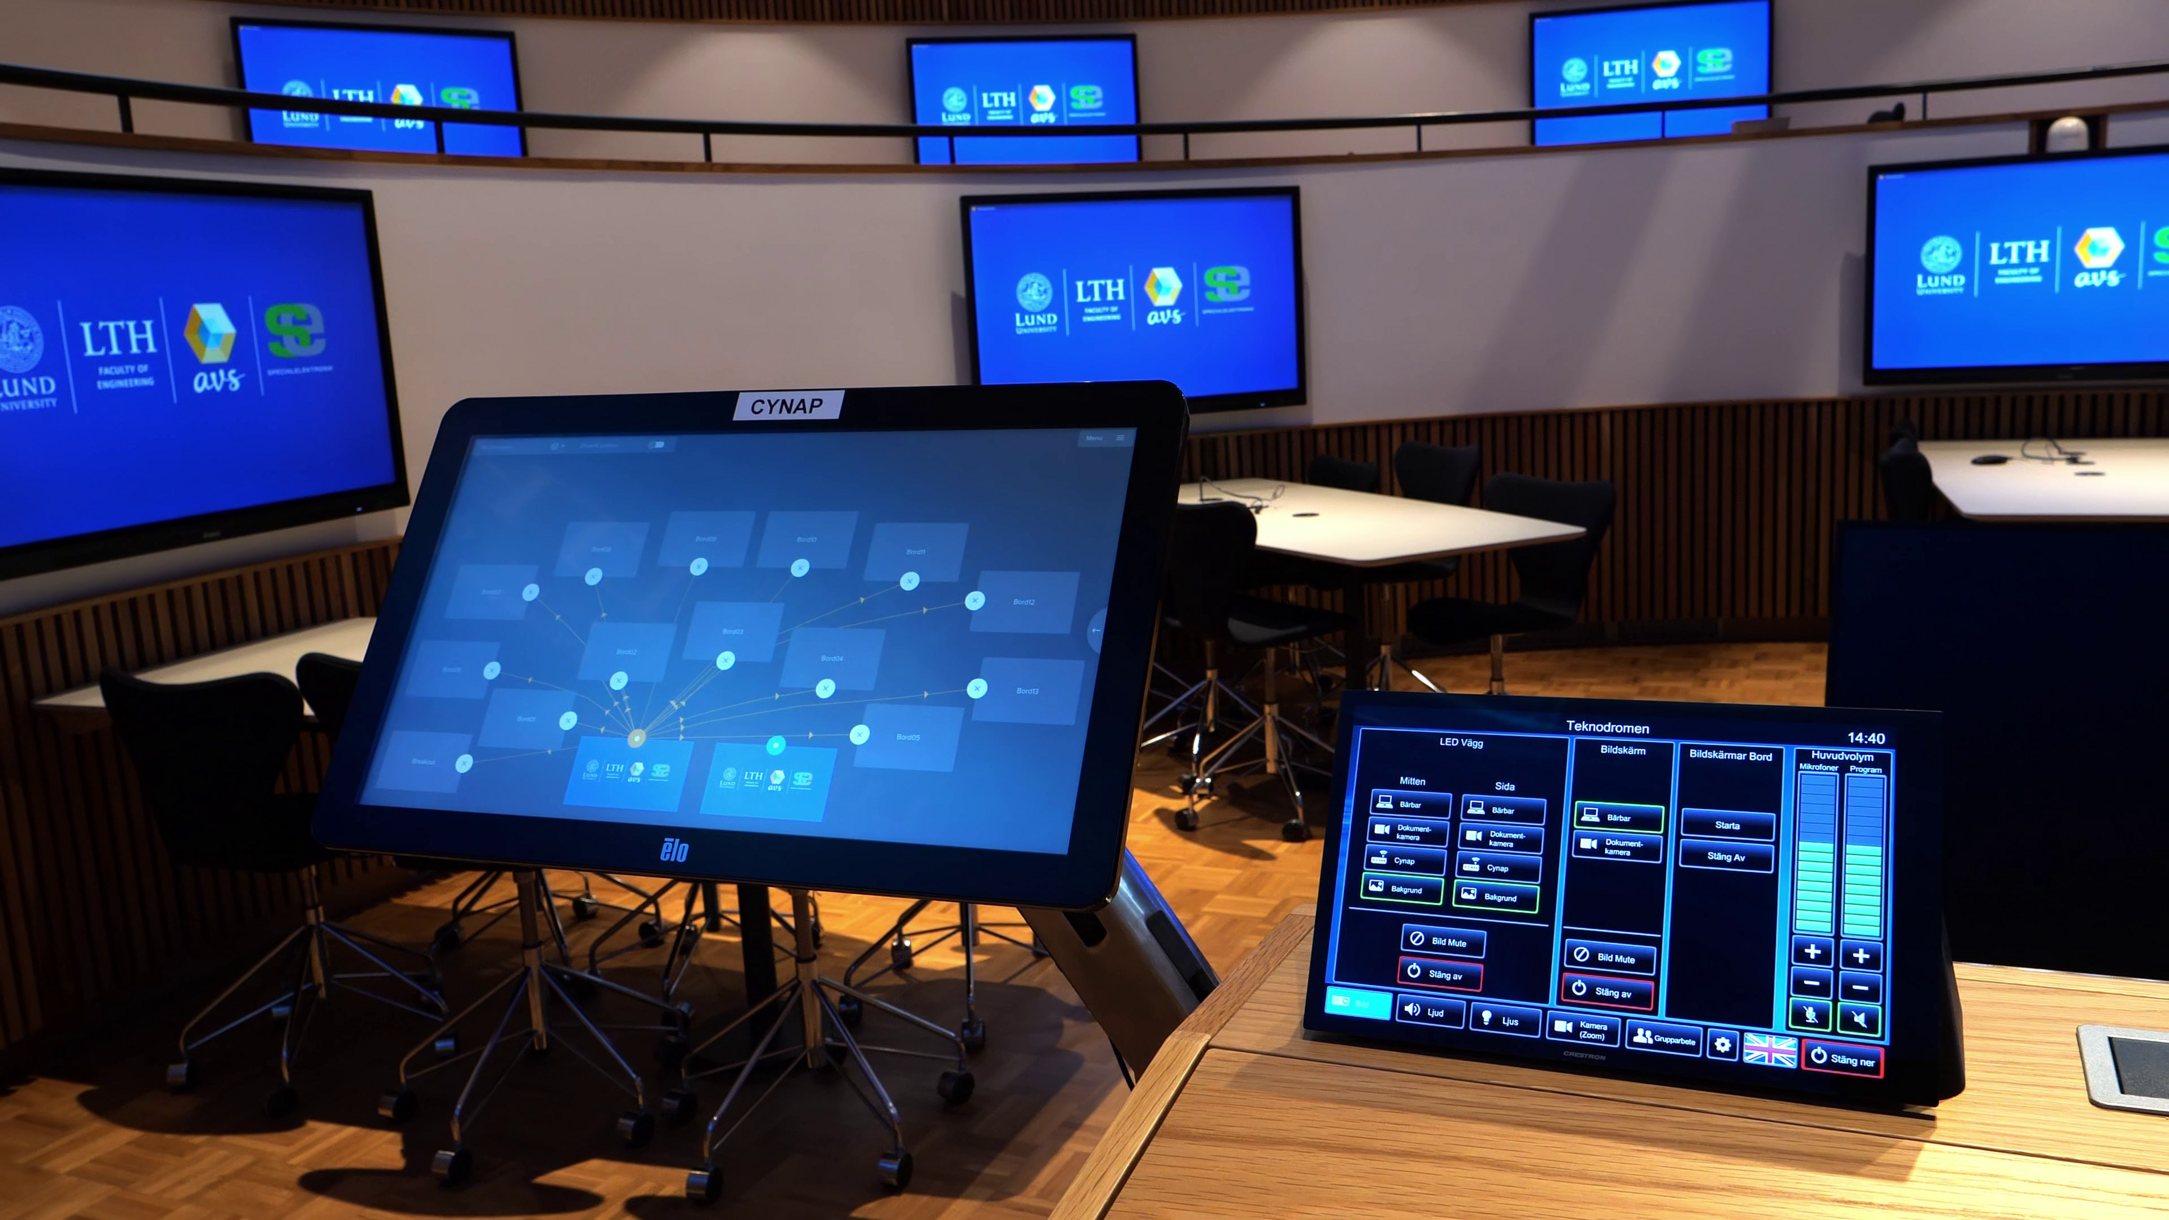 Il touchscreen "Room View" consente un facile controllo di tutti i materiali visualizzati tramite "drag and drop".